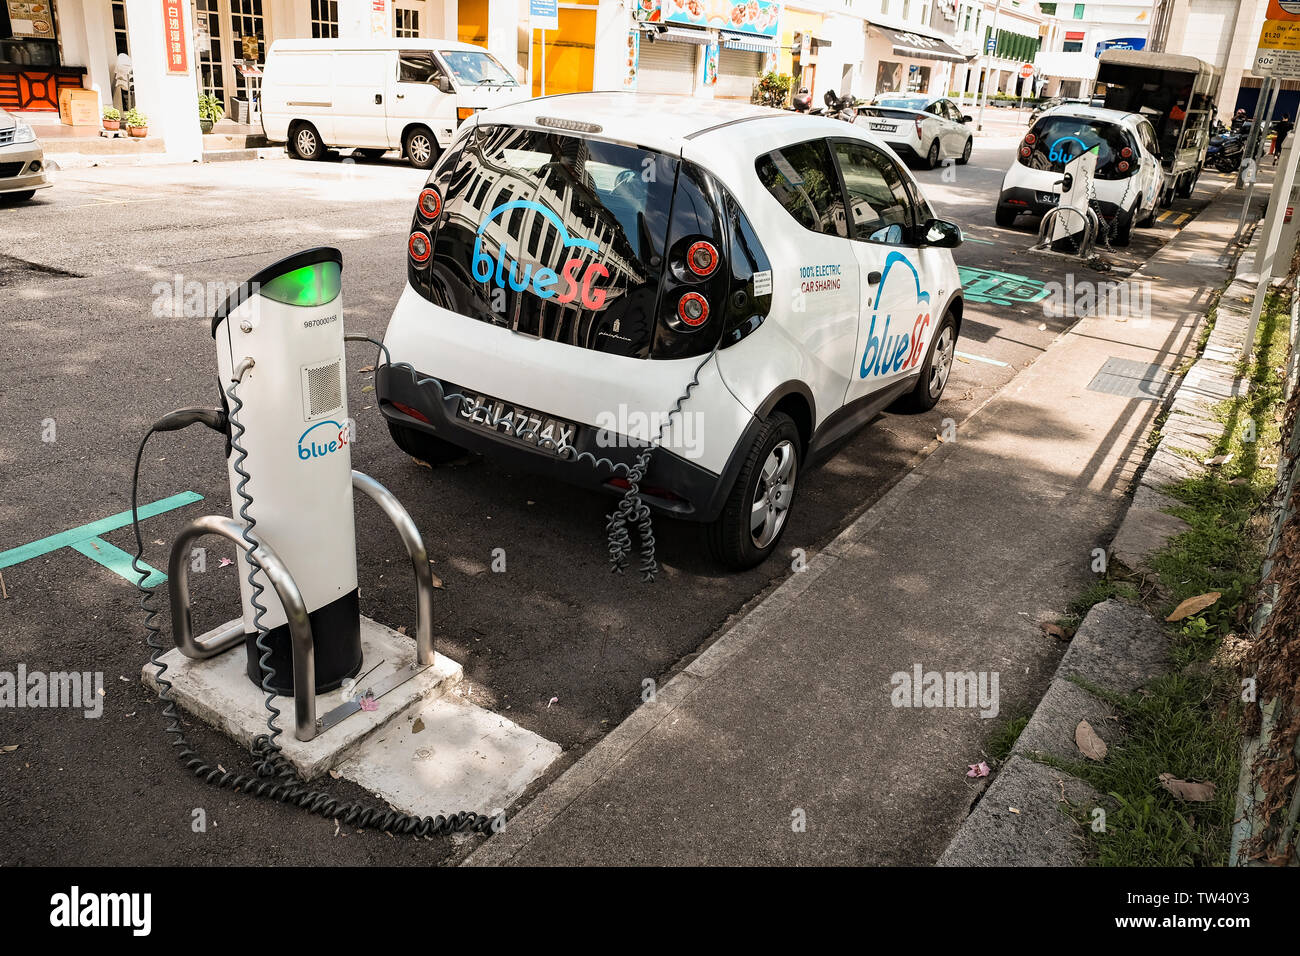 Blu SG electric car sharing scheme in Singapore con stazioni di carica che offre un inquinamento pulita libera da punto a punto della rete di trasporto. Foto Stock